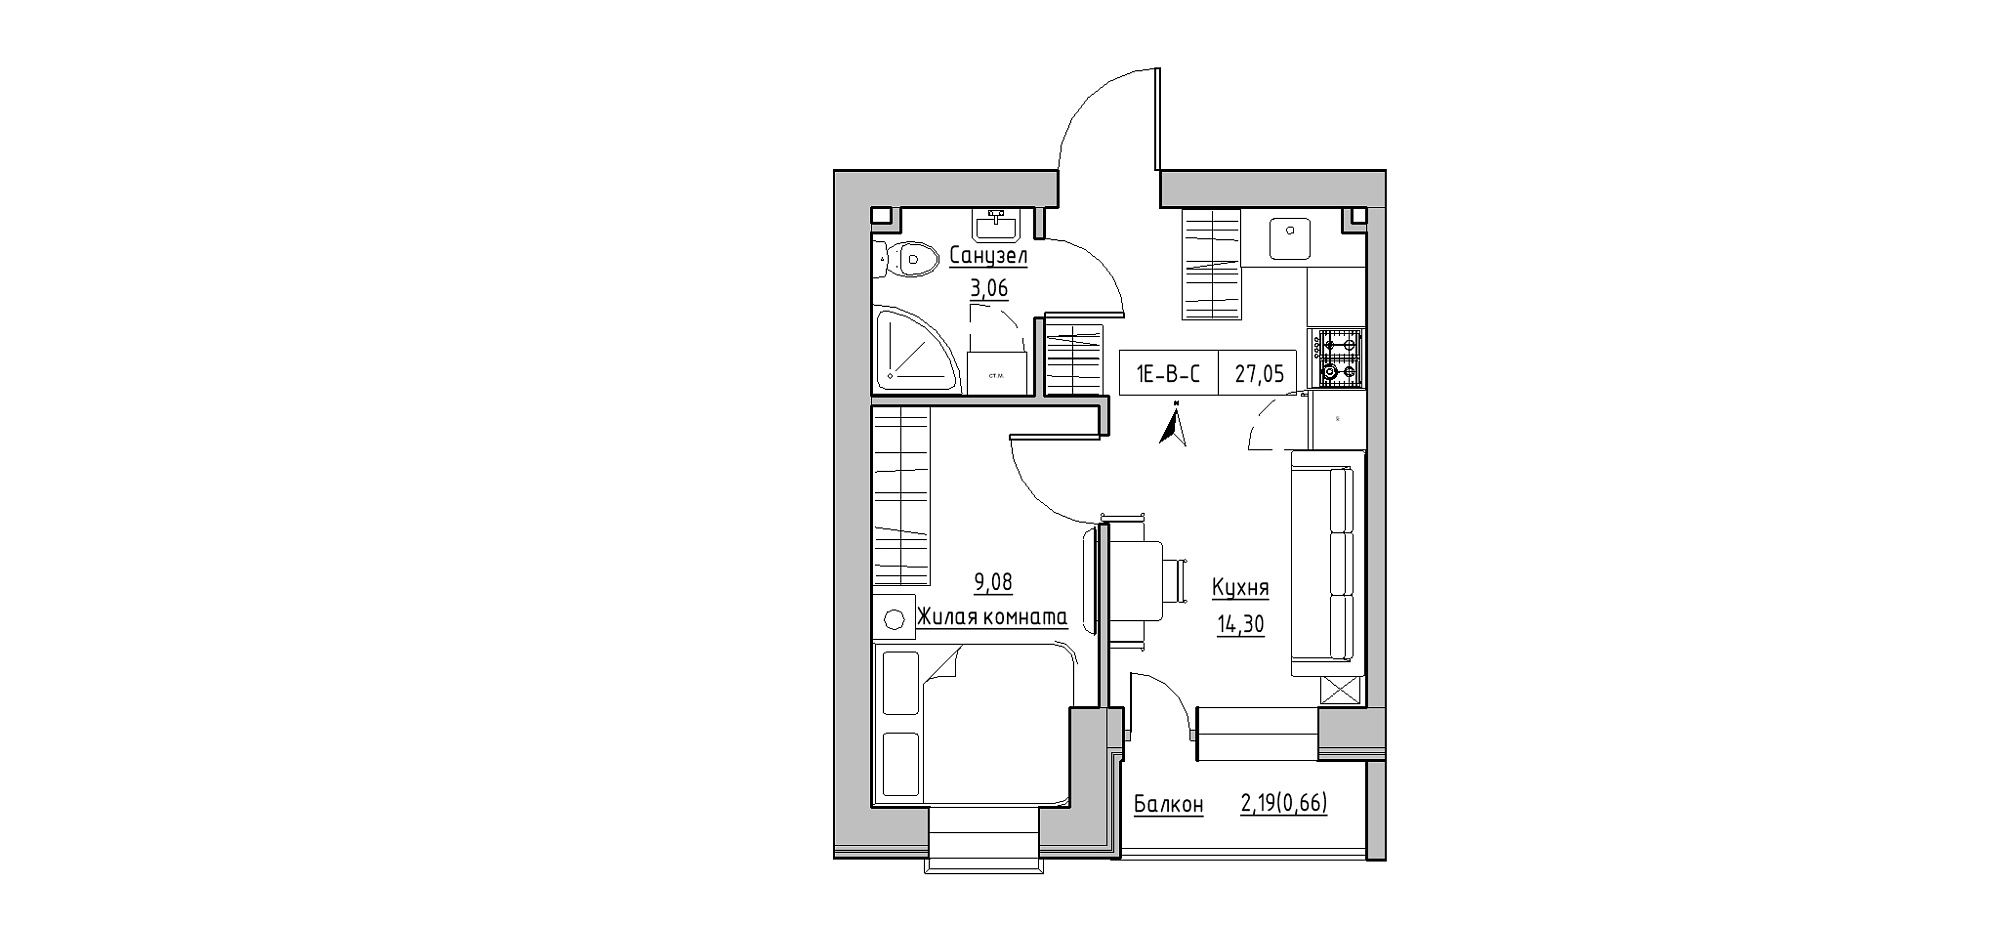 Планування 1-к квартира площею 27.05м2, KS-020-05/0008.